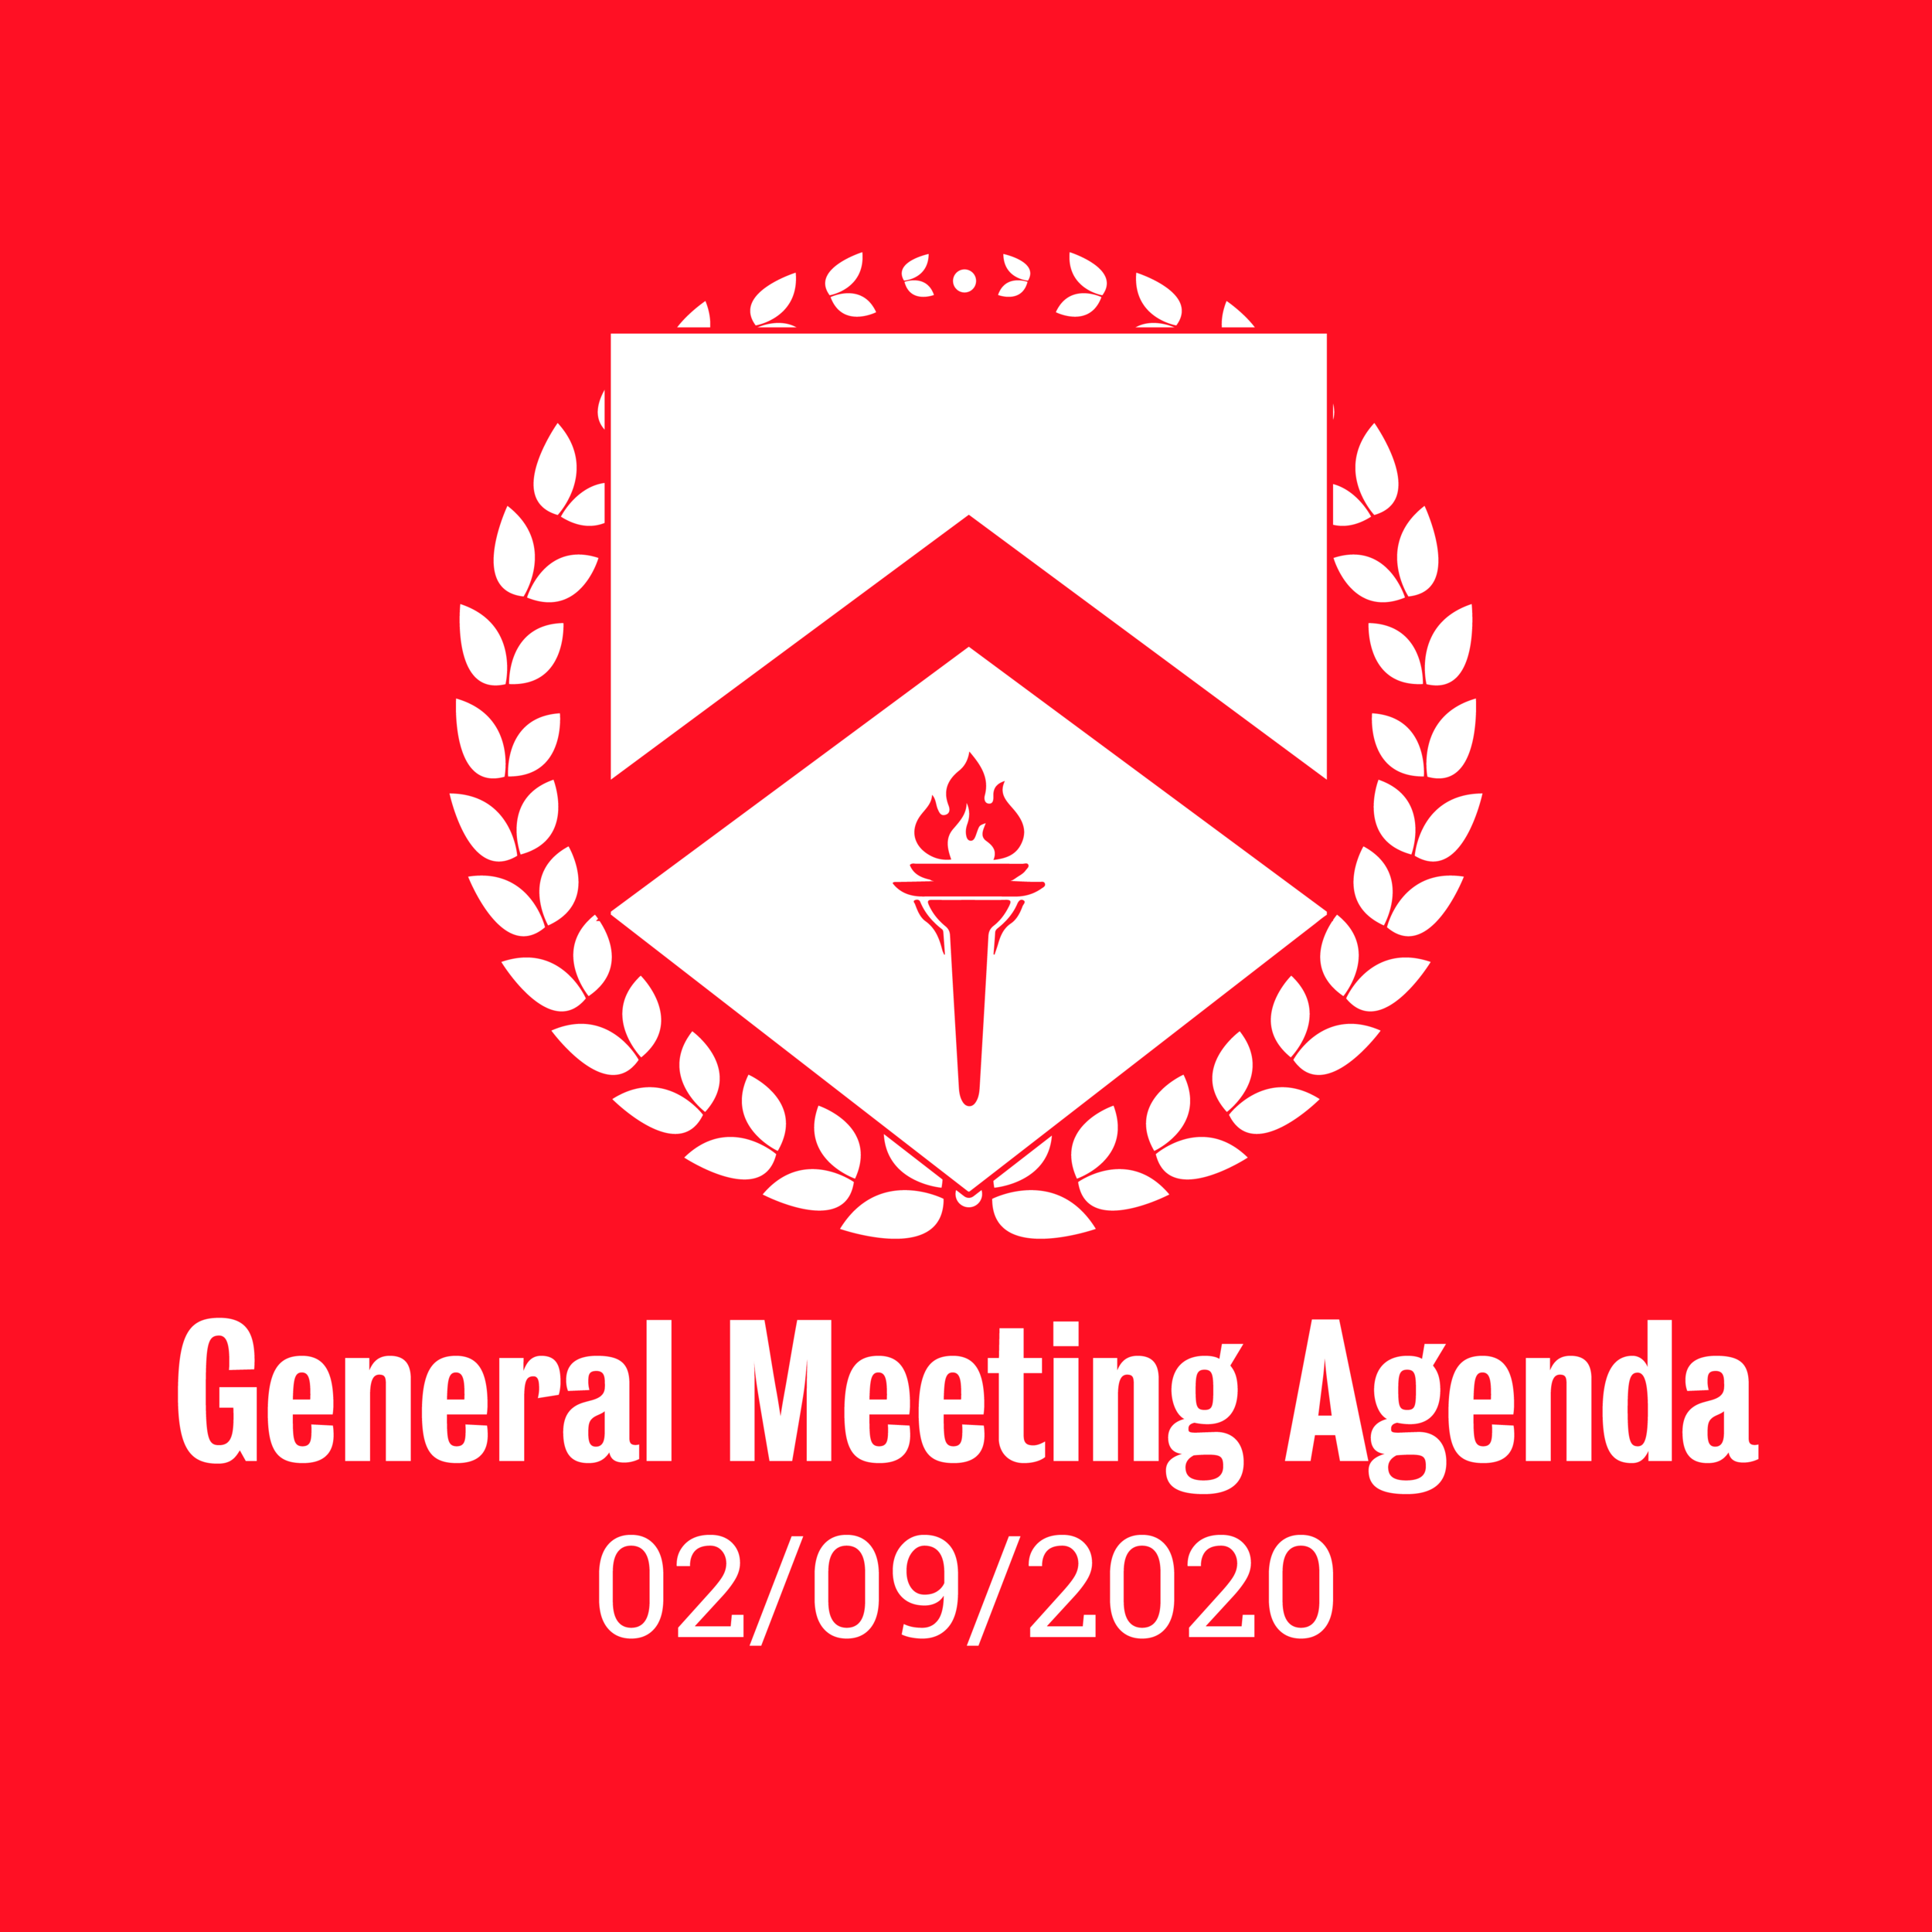 General Meeting Agenda 02/09/2020